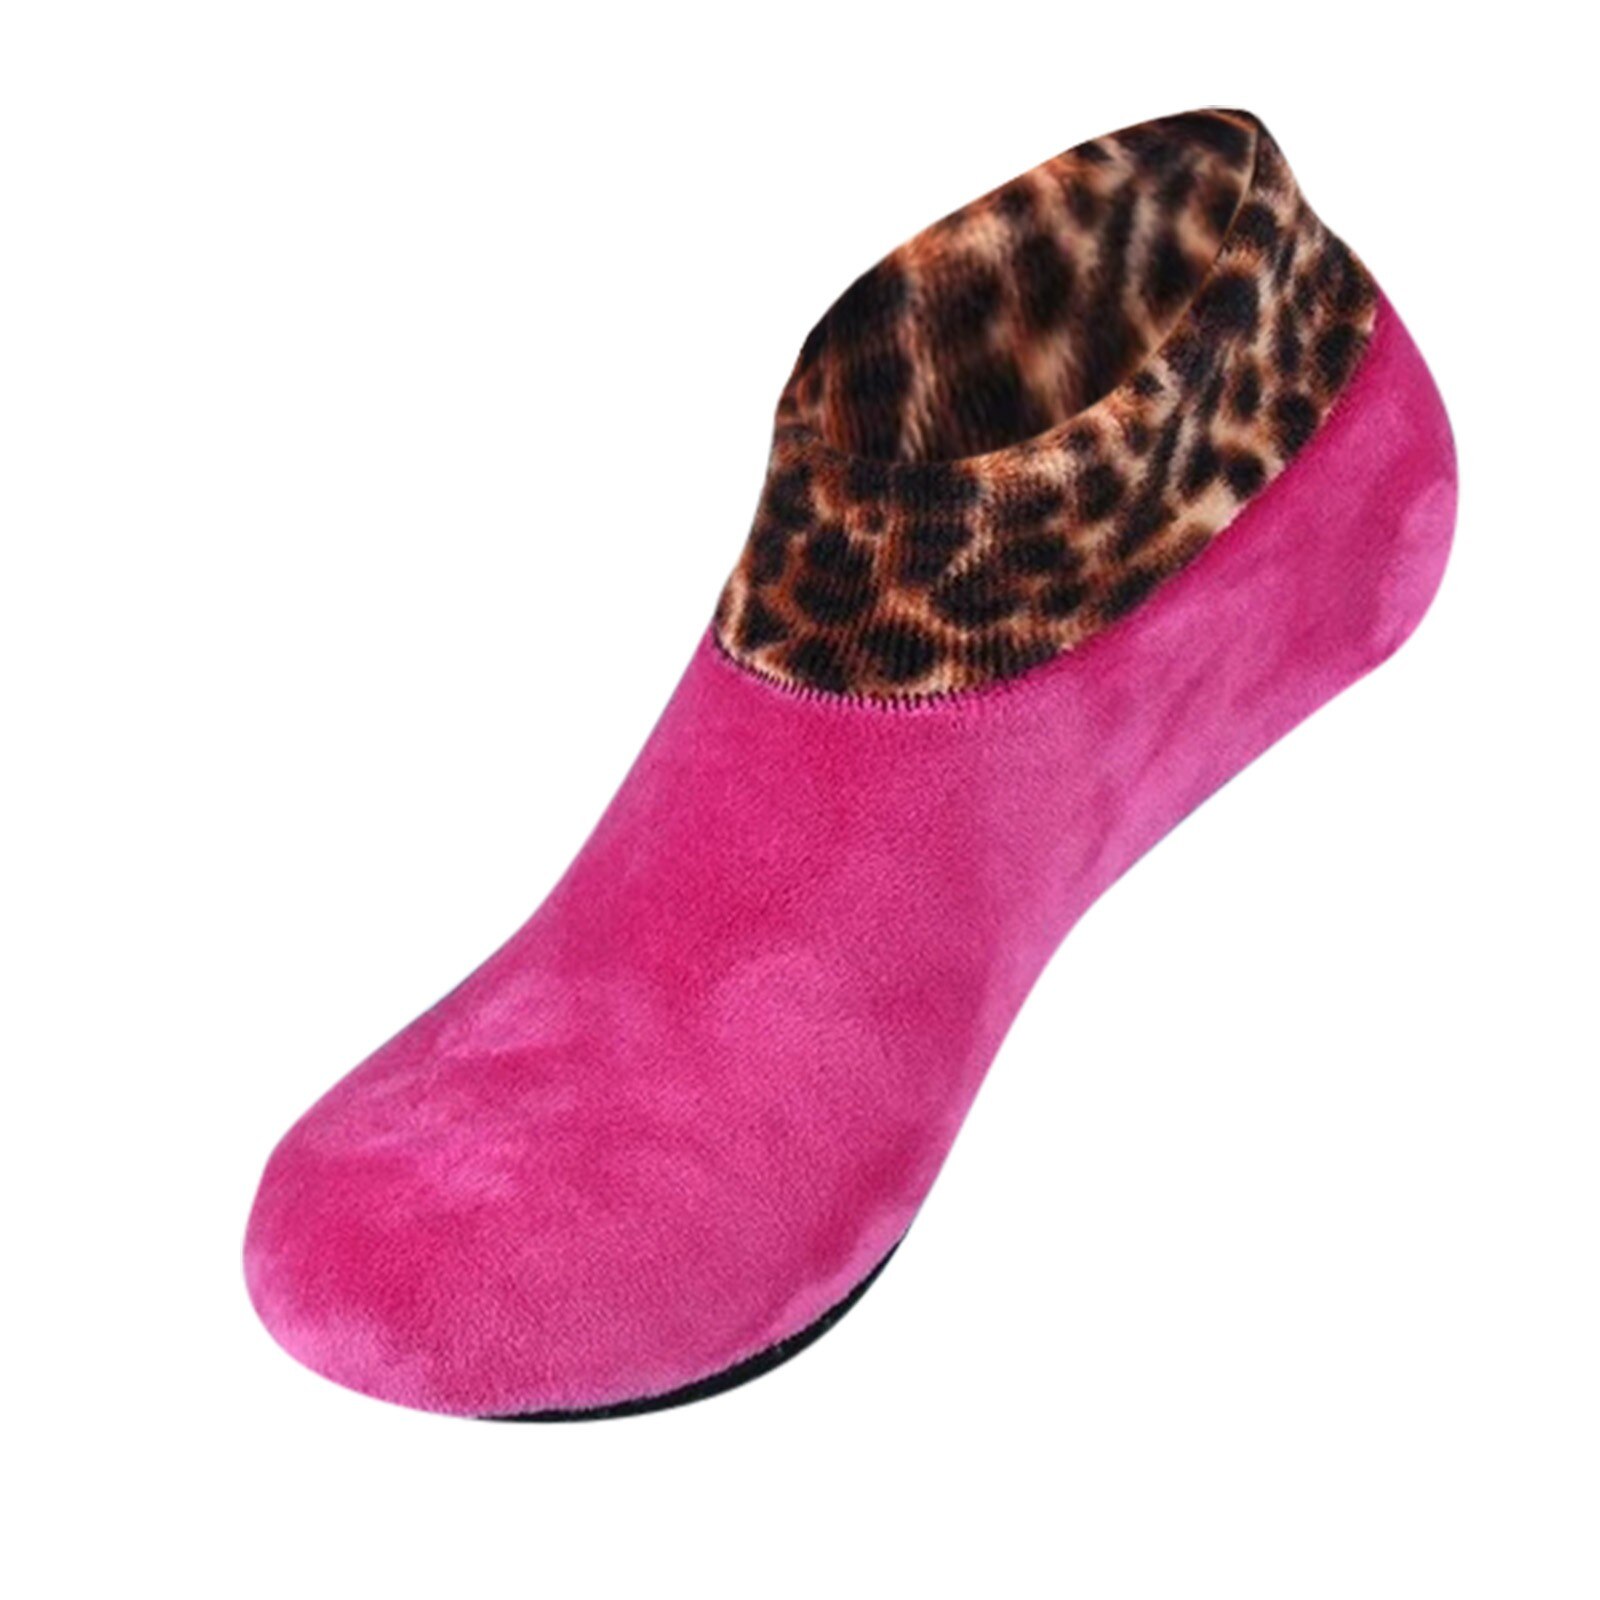 Donna uomo inverno caldo stampa leopardo addensare calzini termici lana Cashmere antiscivolo calzino per la casa stivali morbidi calzini per dormire al pavimento: Colore rosa